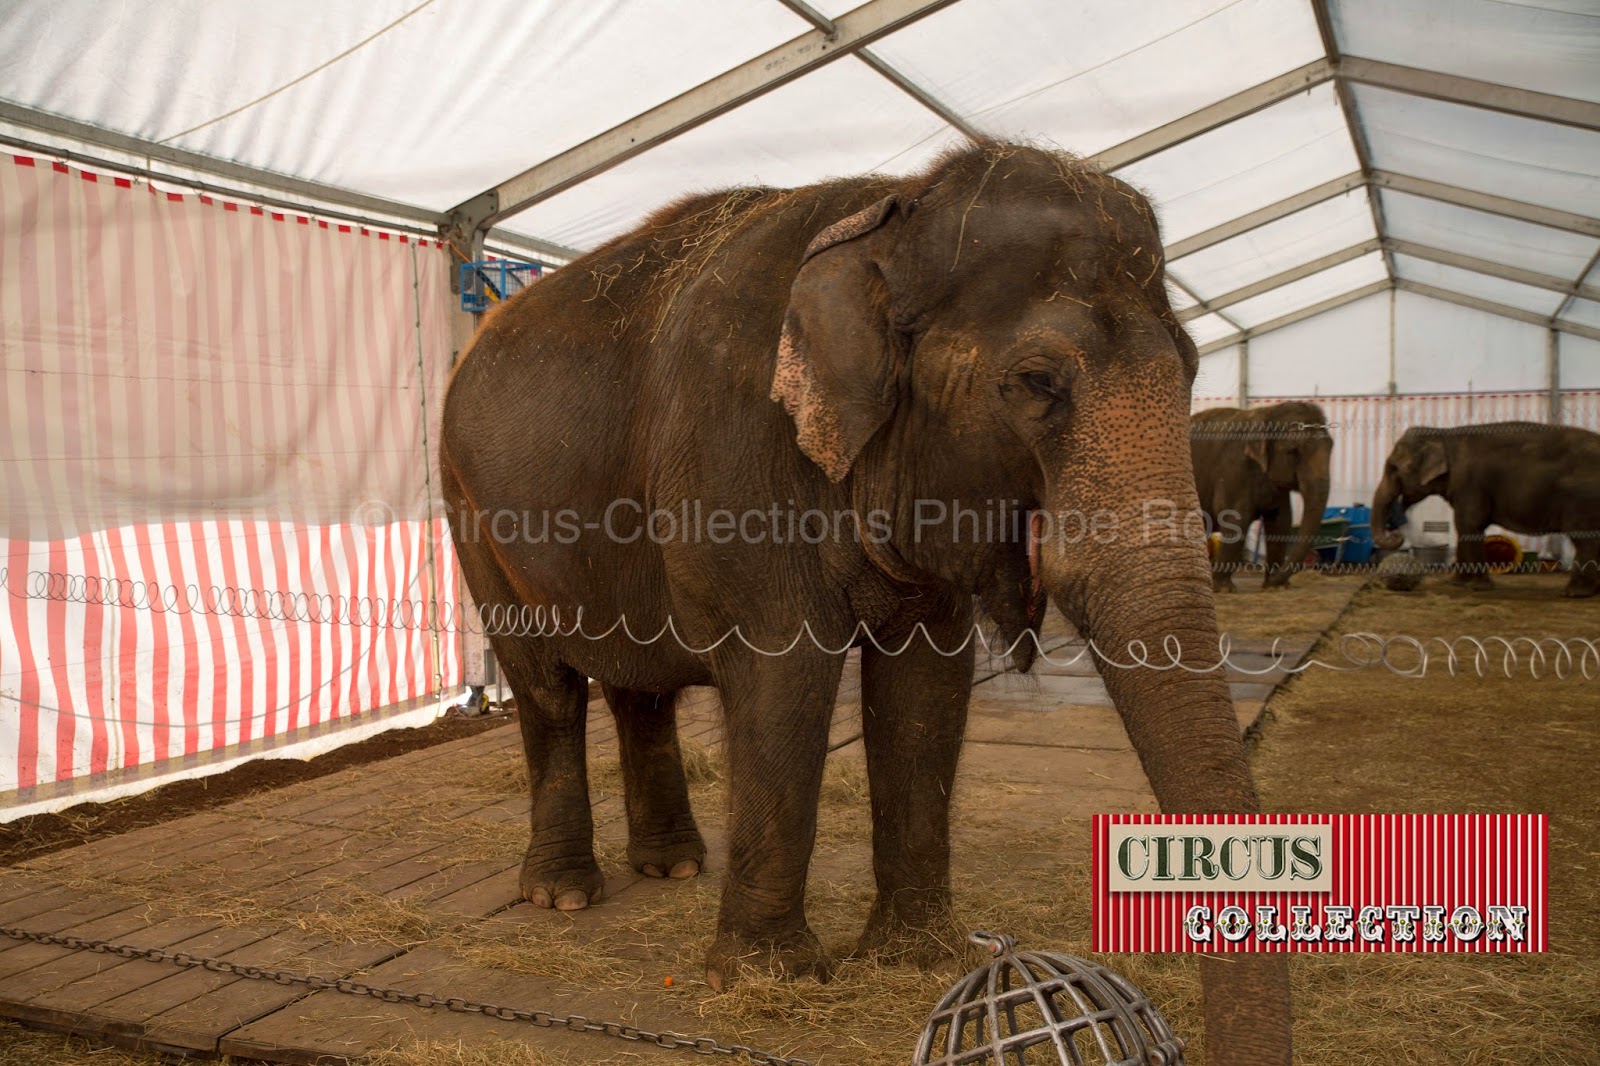 les pachydermes asiatique du Cirque Knie  au chaud dans la tente écurie 